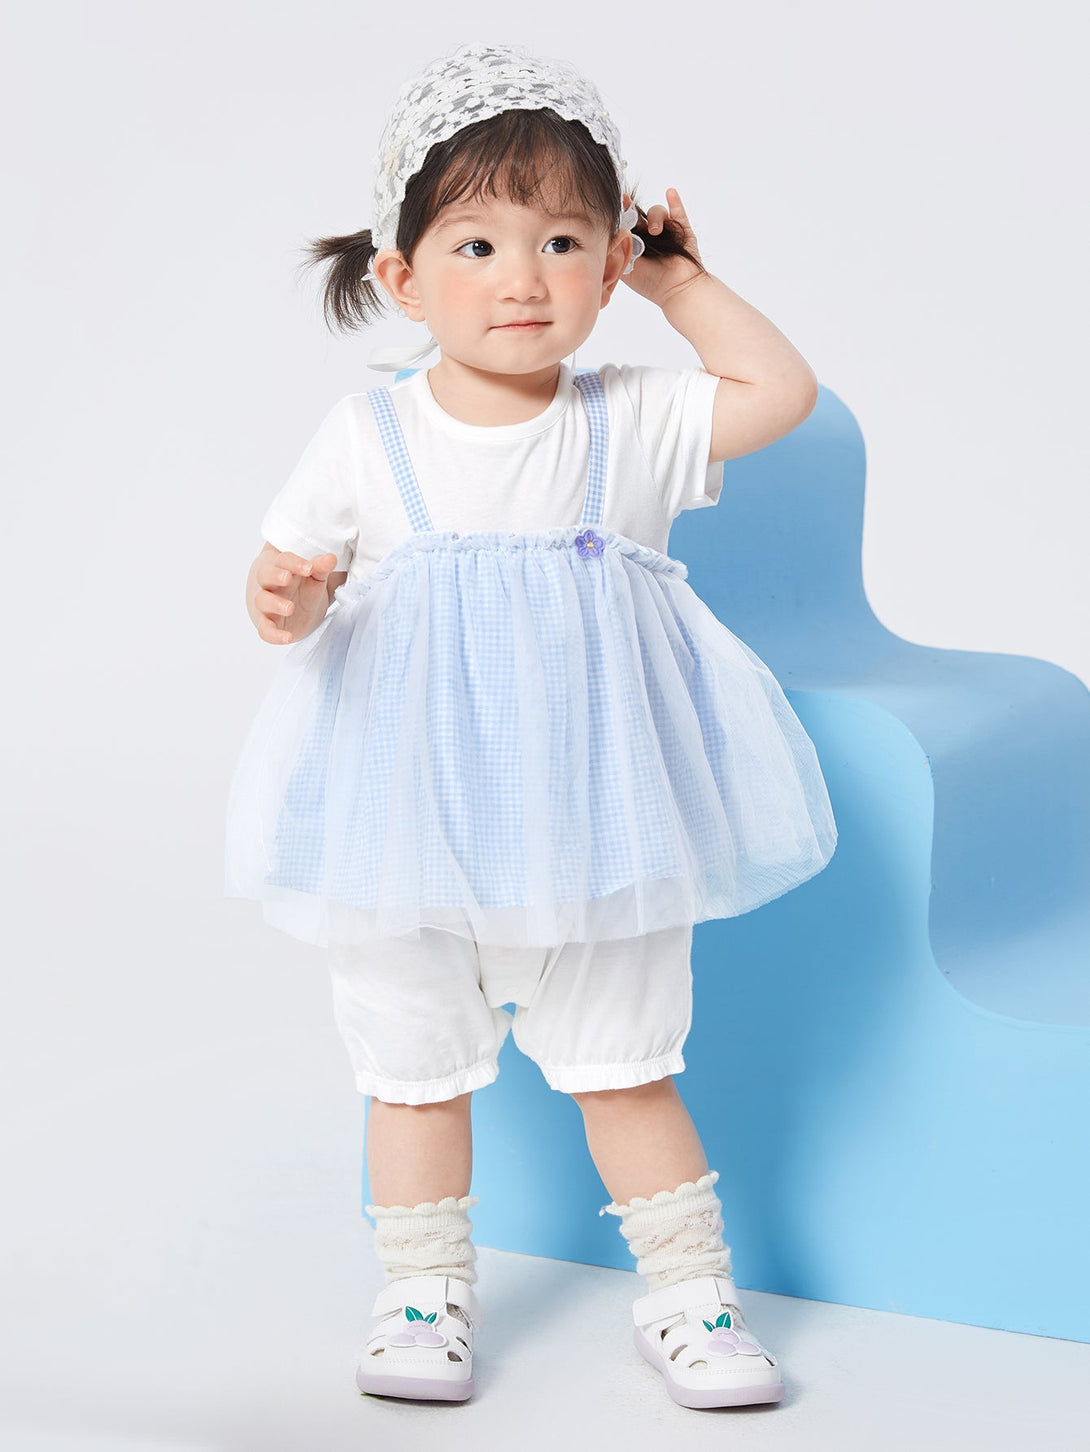 balabala格子連身衣新生兒衣服甜美可愛寶寶連體衣女嬰童外出爬爬服夏裝時尚精緻甜美連身衣0-2歲 - balabala